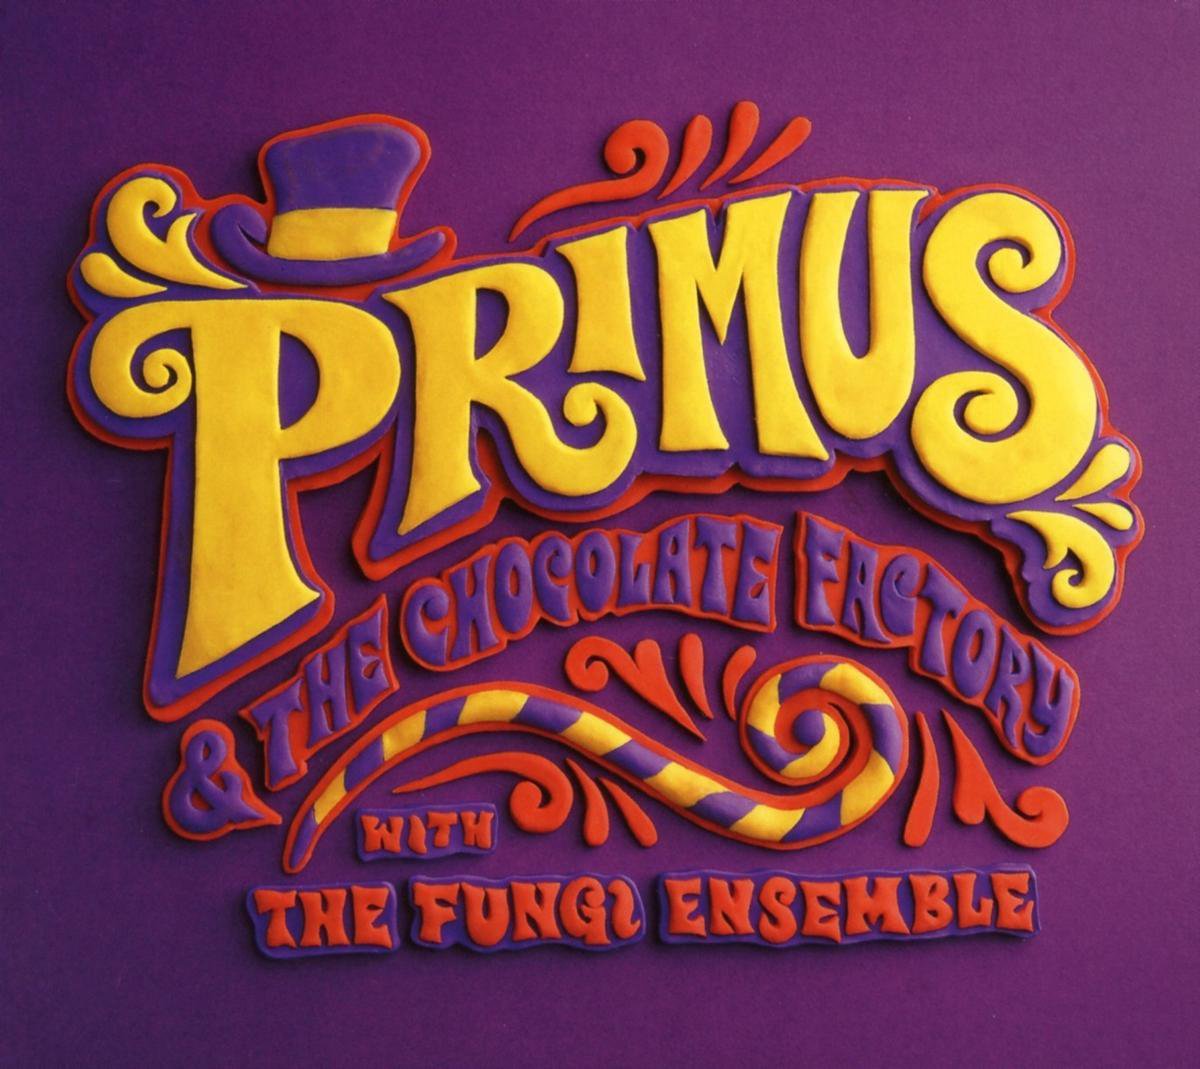 primus chocolate factory full album